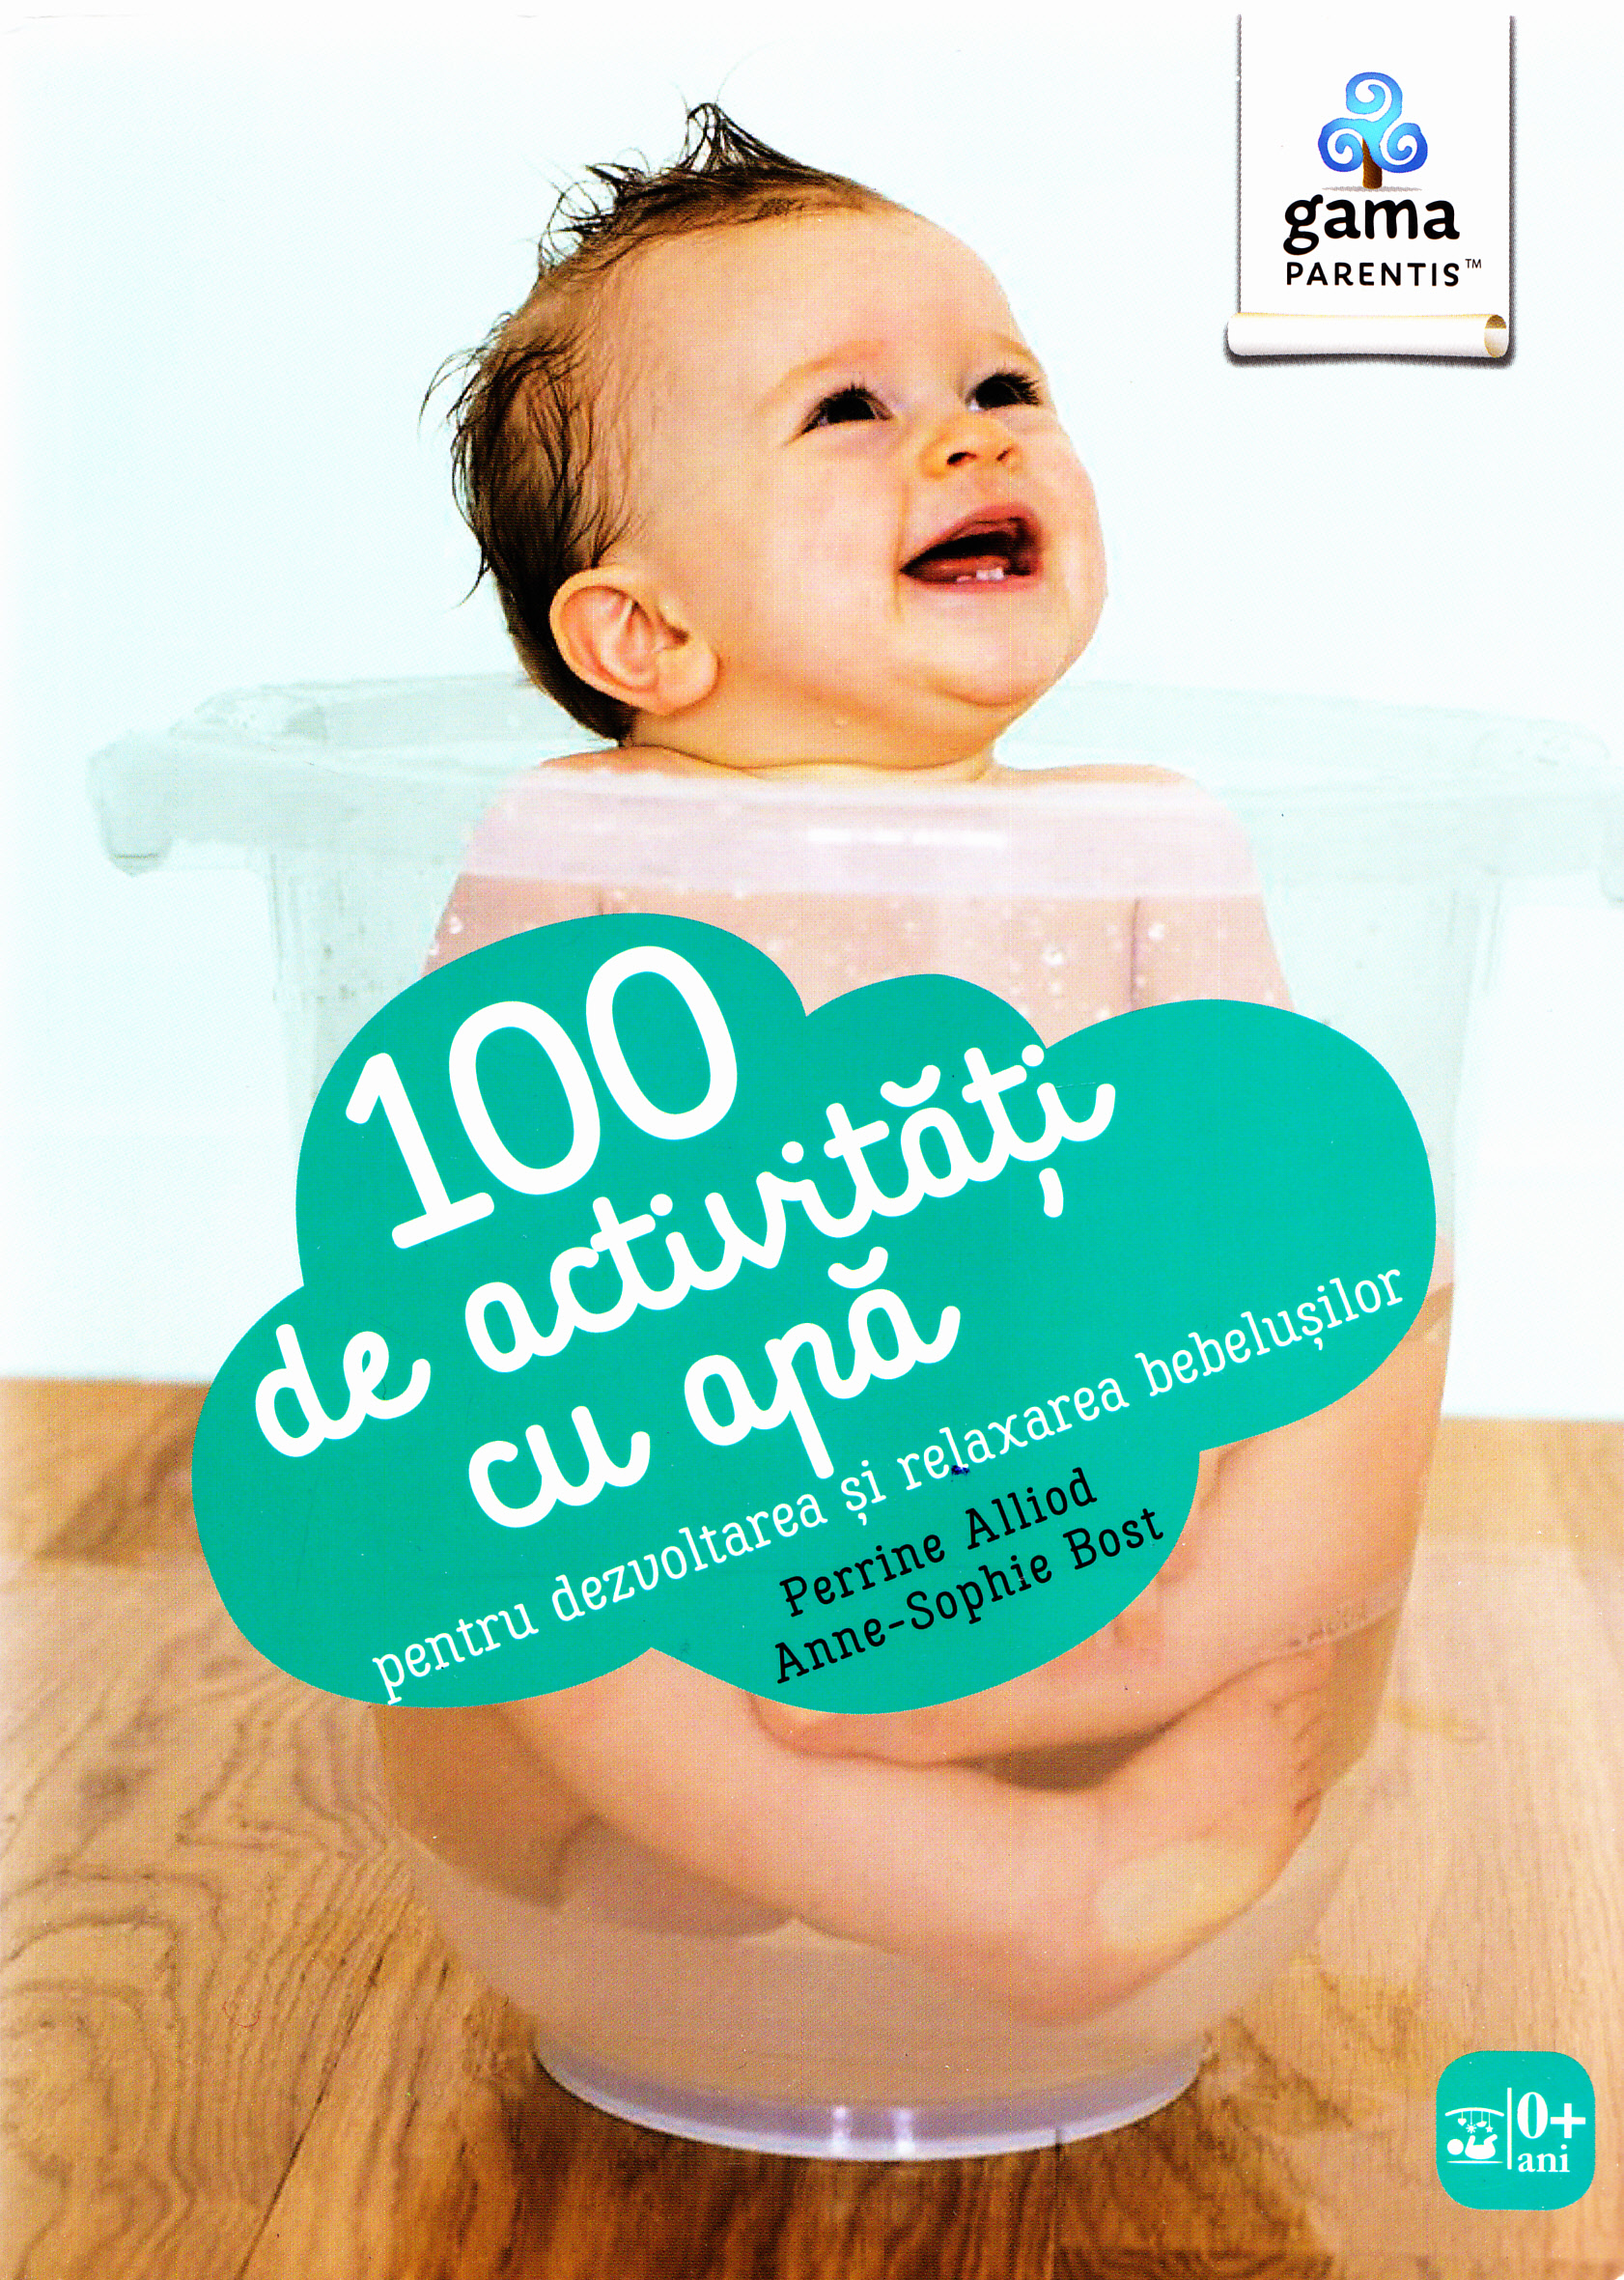 100 de activitati cu apa pentru dezvoltarea si relaxarea bebelusilor - Perrine Alliod